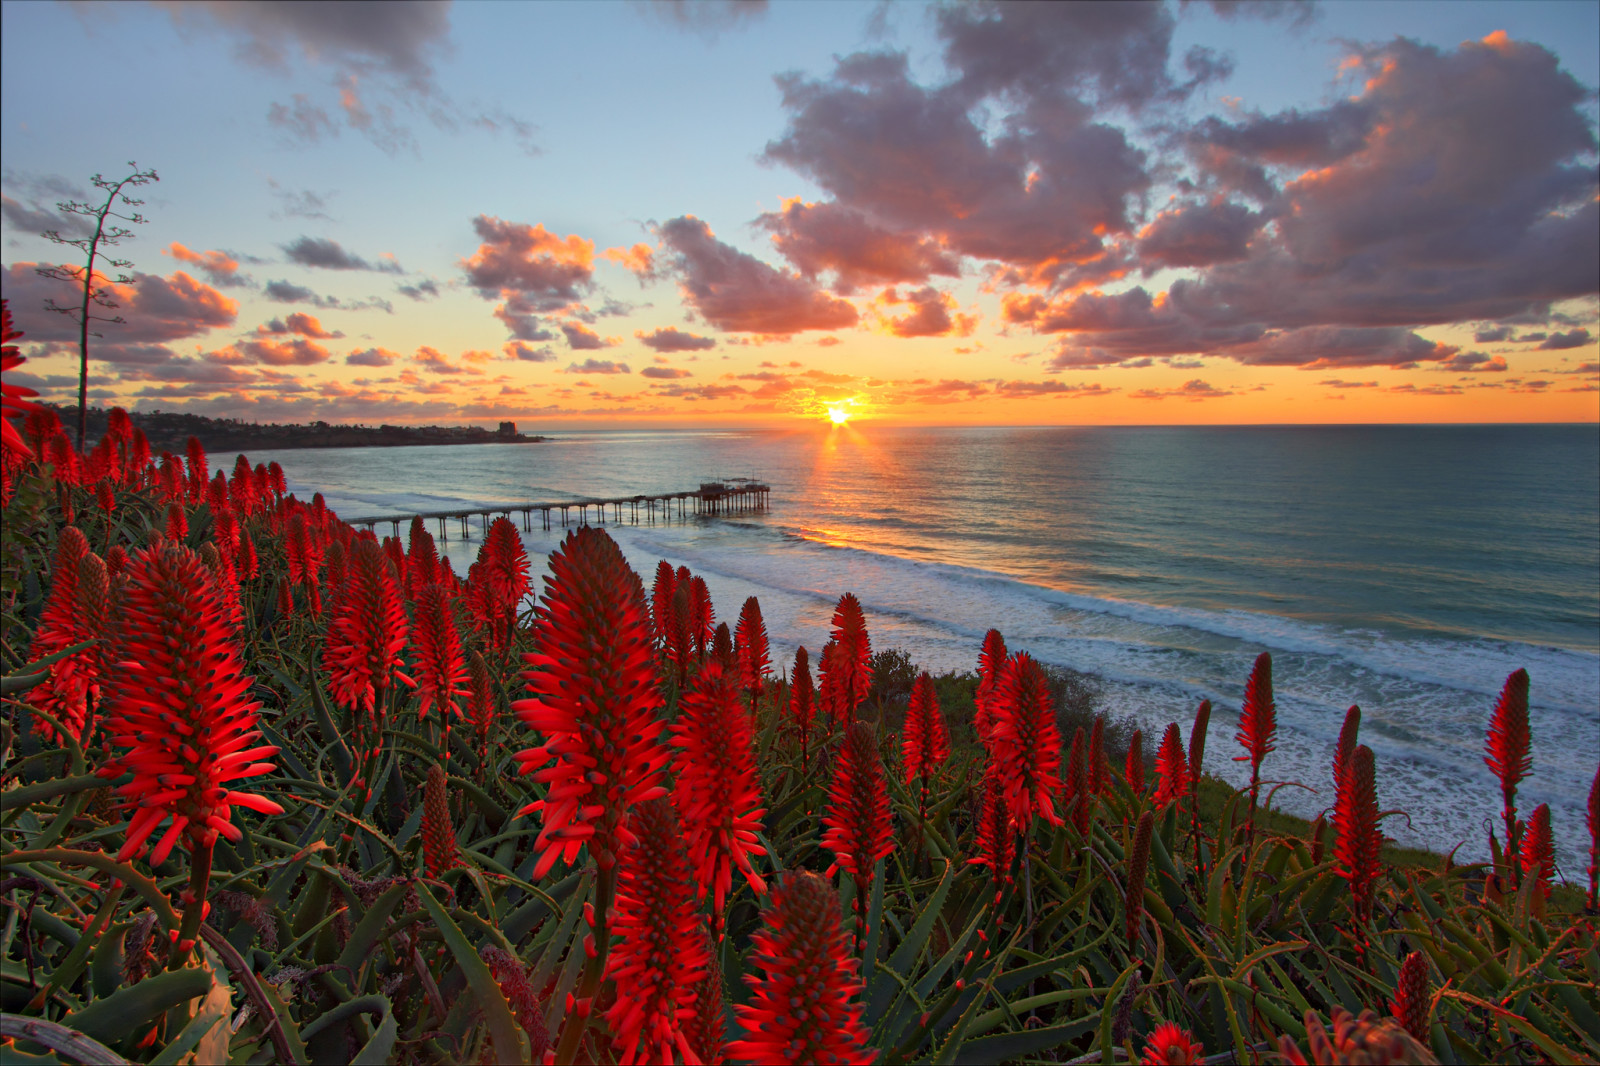 สีแดง, ชายหาด, ดอกไม้, มหาสมุทร, รุ่งอรุณ, ดวงอาทิตย์, ลาด, ขอบฟ้า